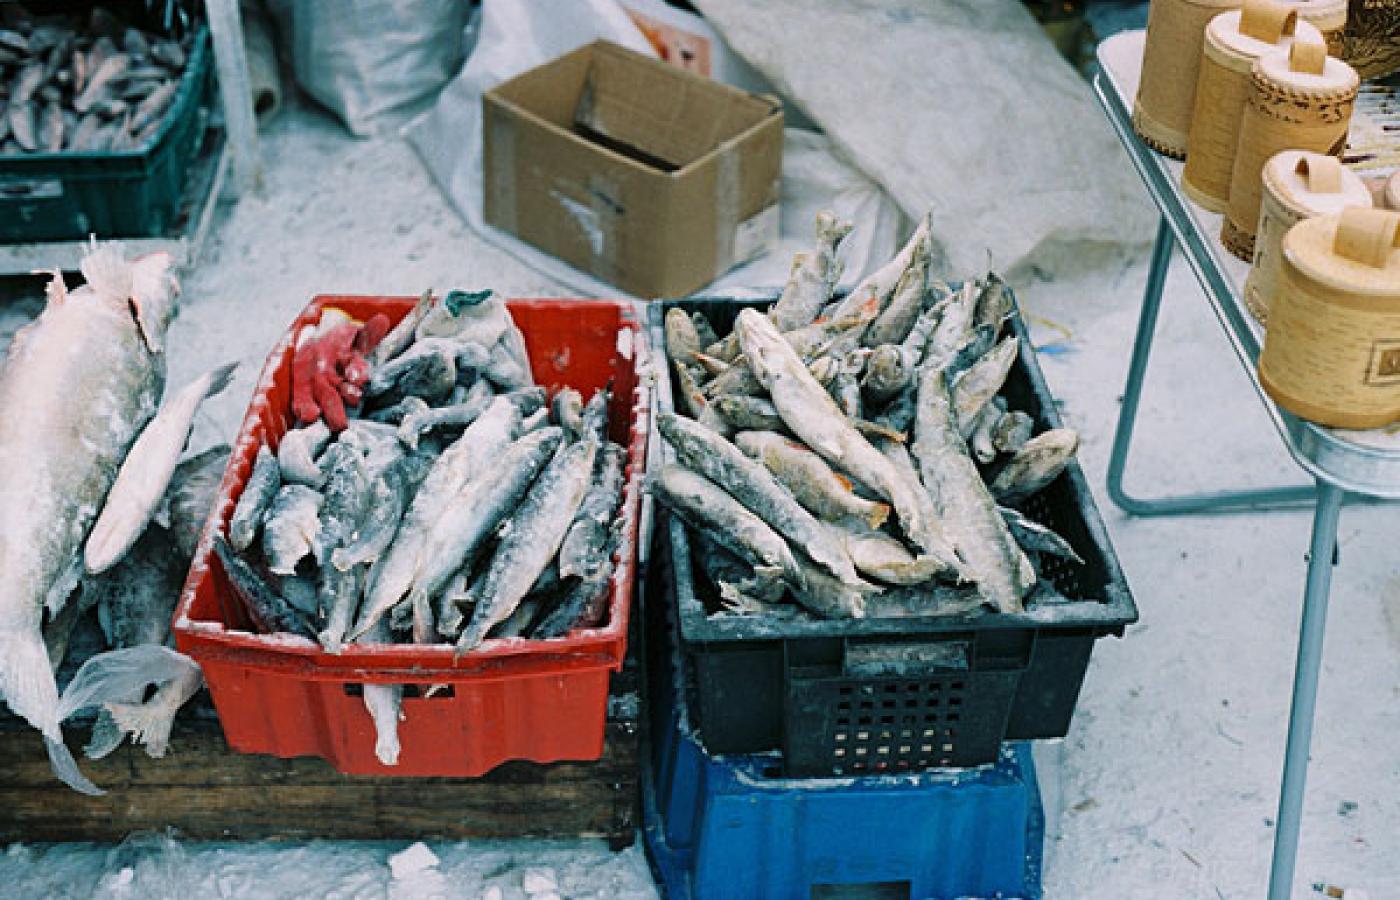 Czy te państwowe ryby zostały uczciwie zdobyte? Rosyjscy obywatele sami sobie muszą odpowiedzieć na to pytanie